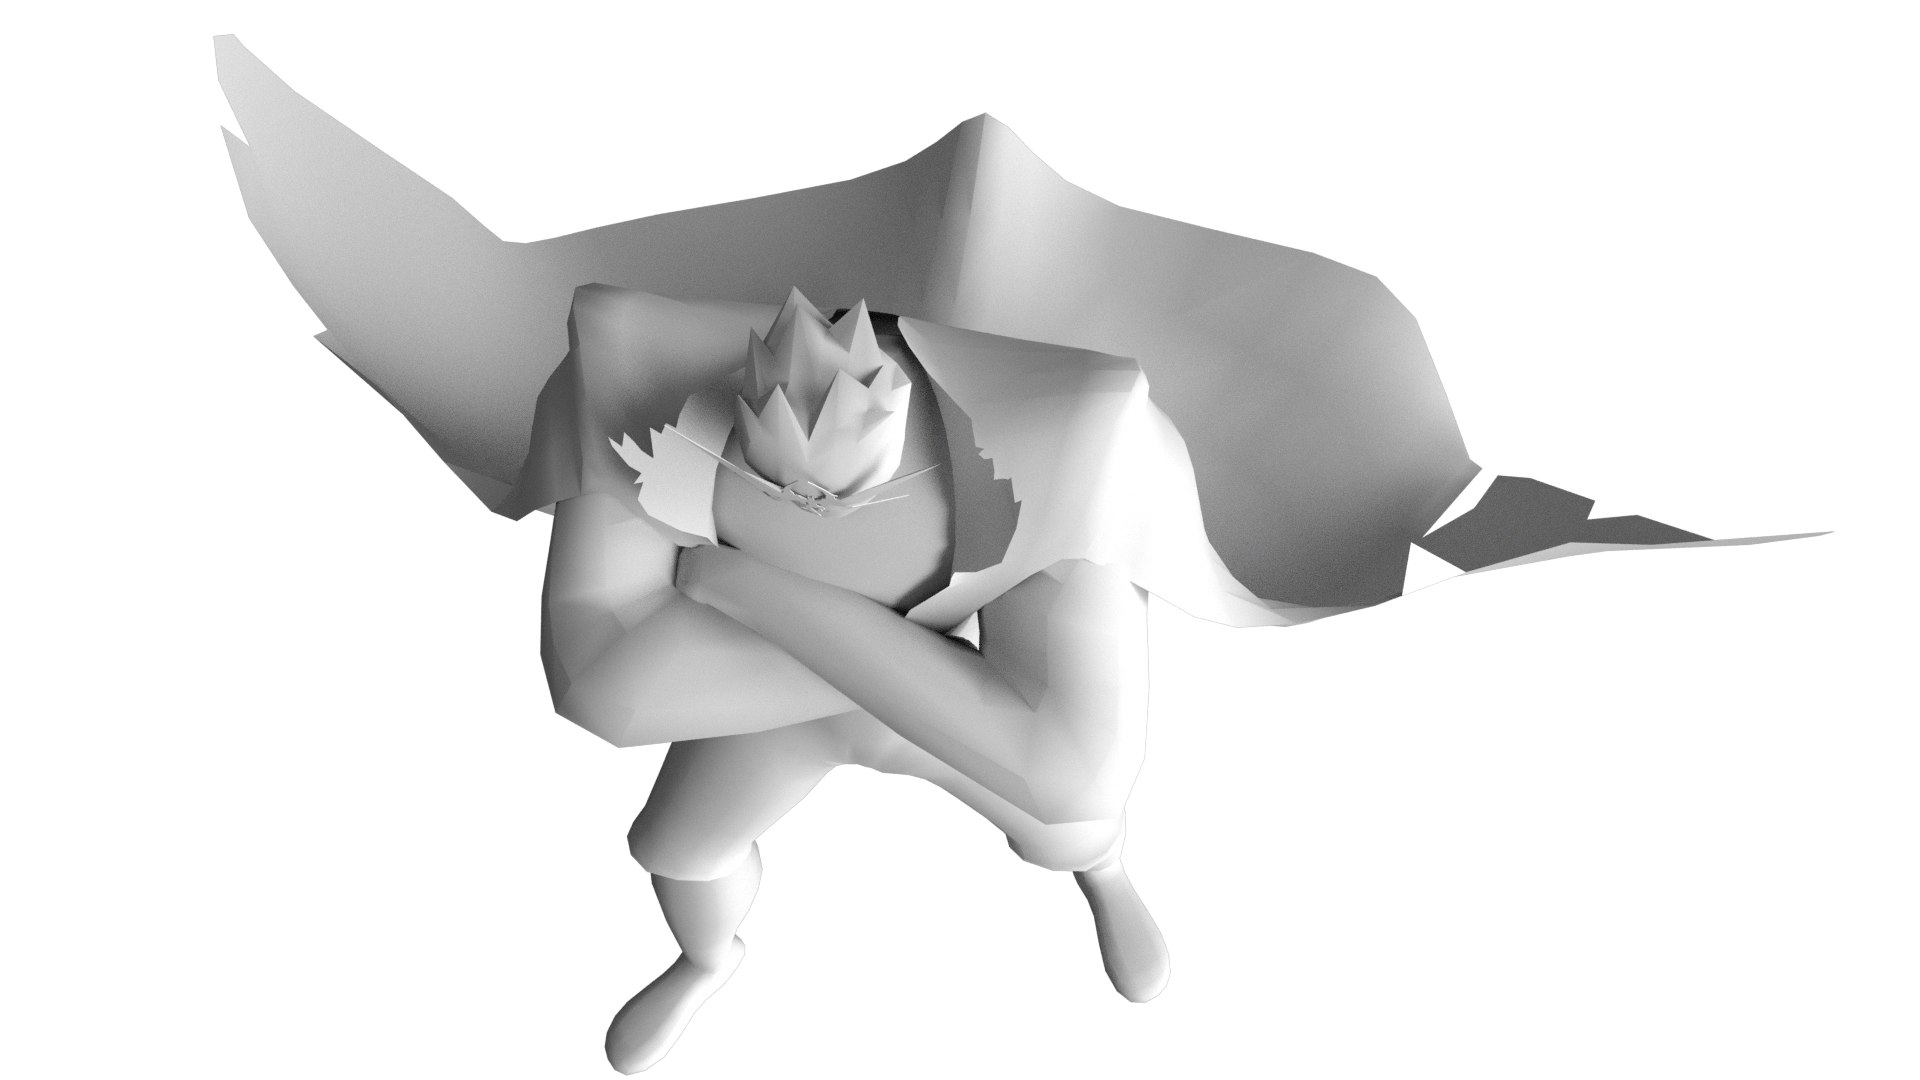 Super Tengen Toppa Gurren Lagann - 3D model by UTF2005 (@utf2005) [9e39d2b]